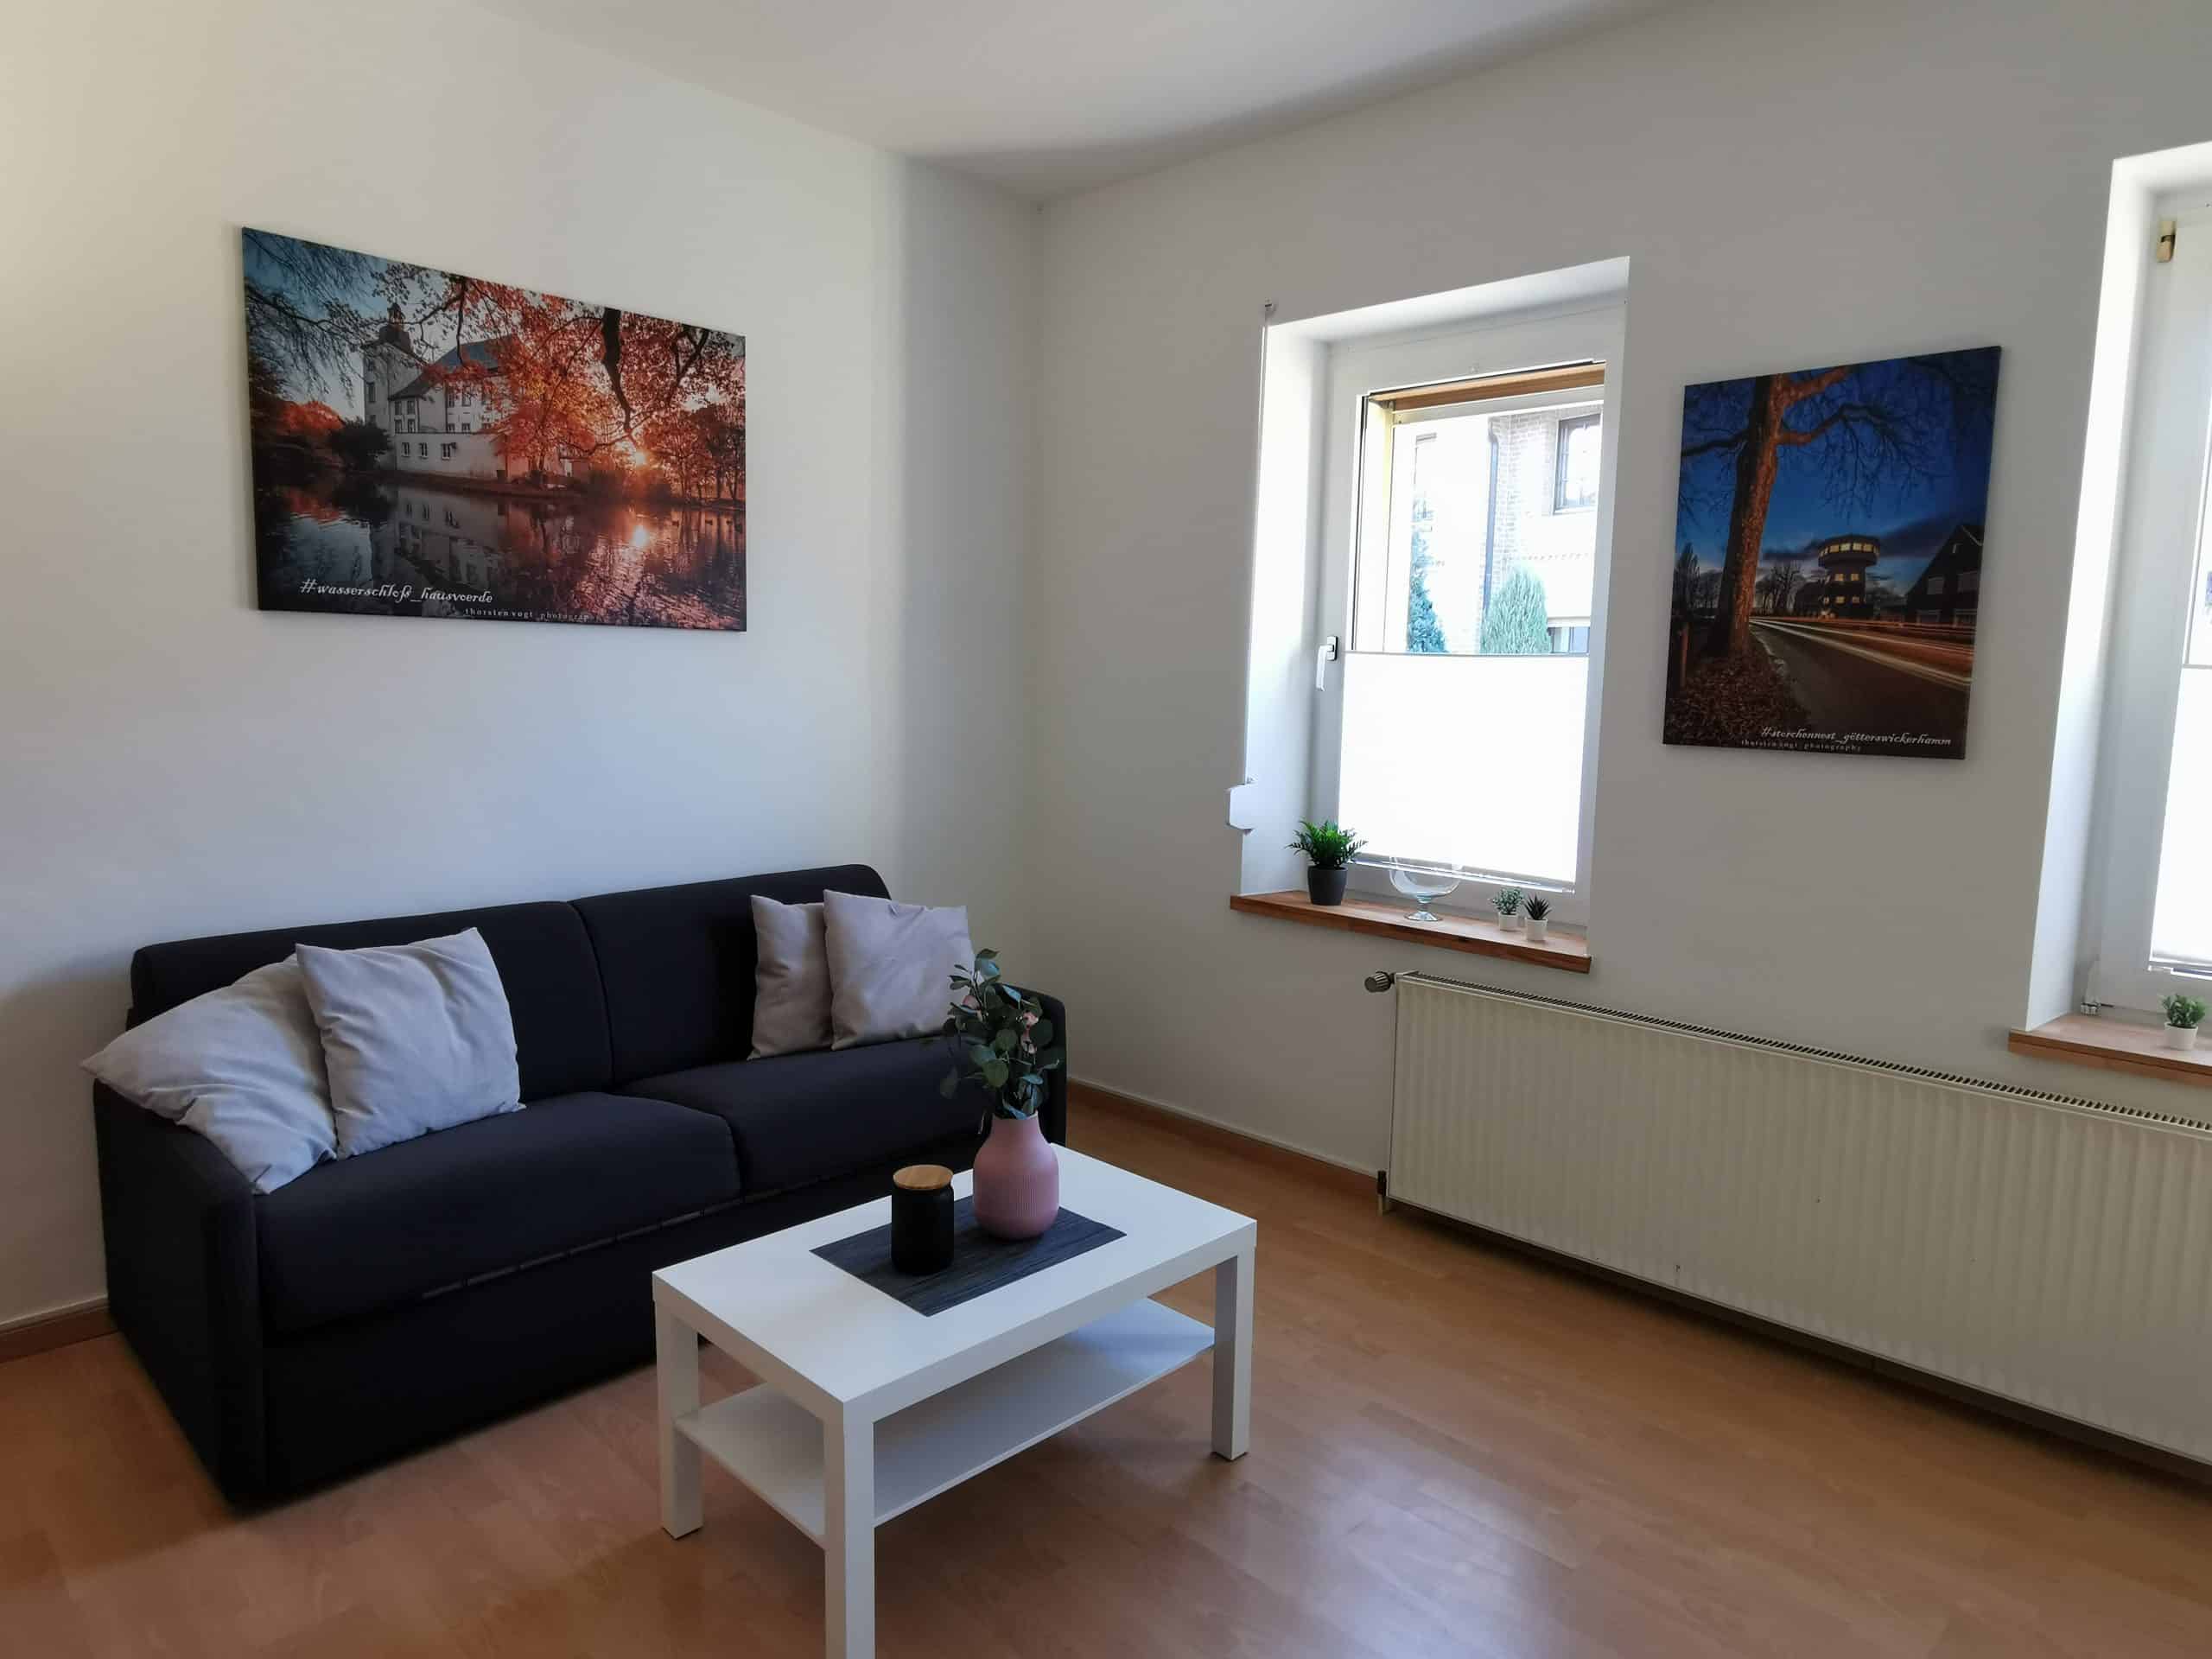 Das Bild zeigt das Wohnzimmer der Gästewohnung am Mommbach